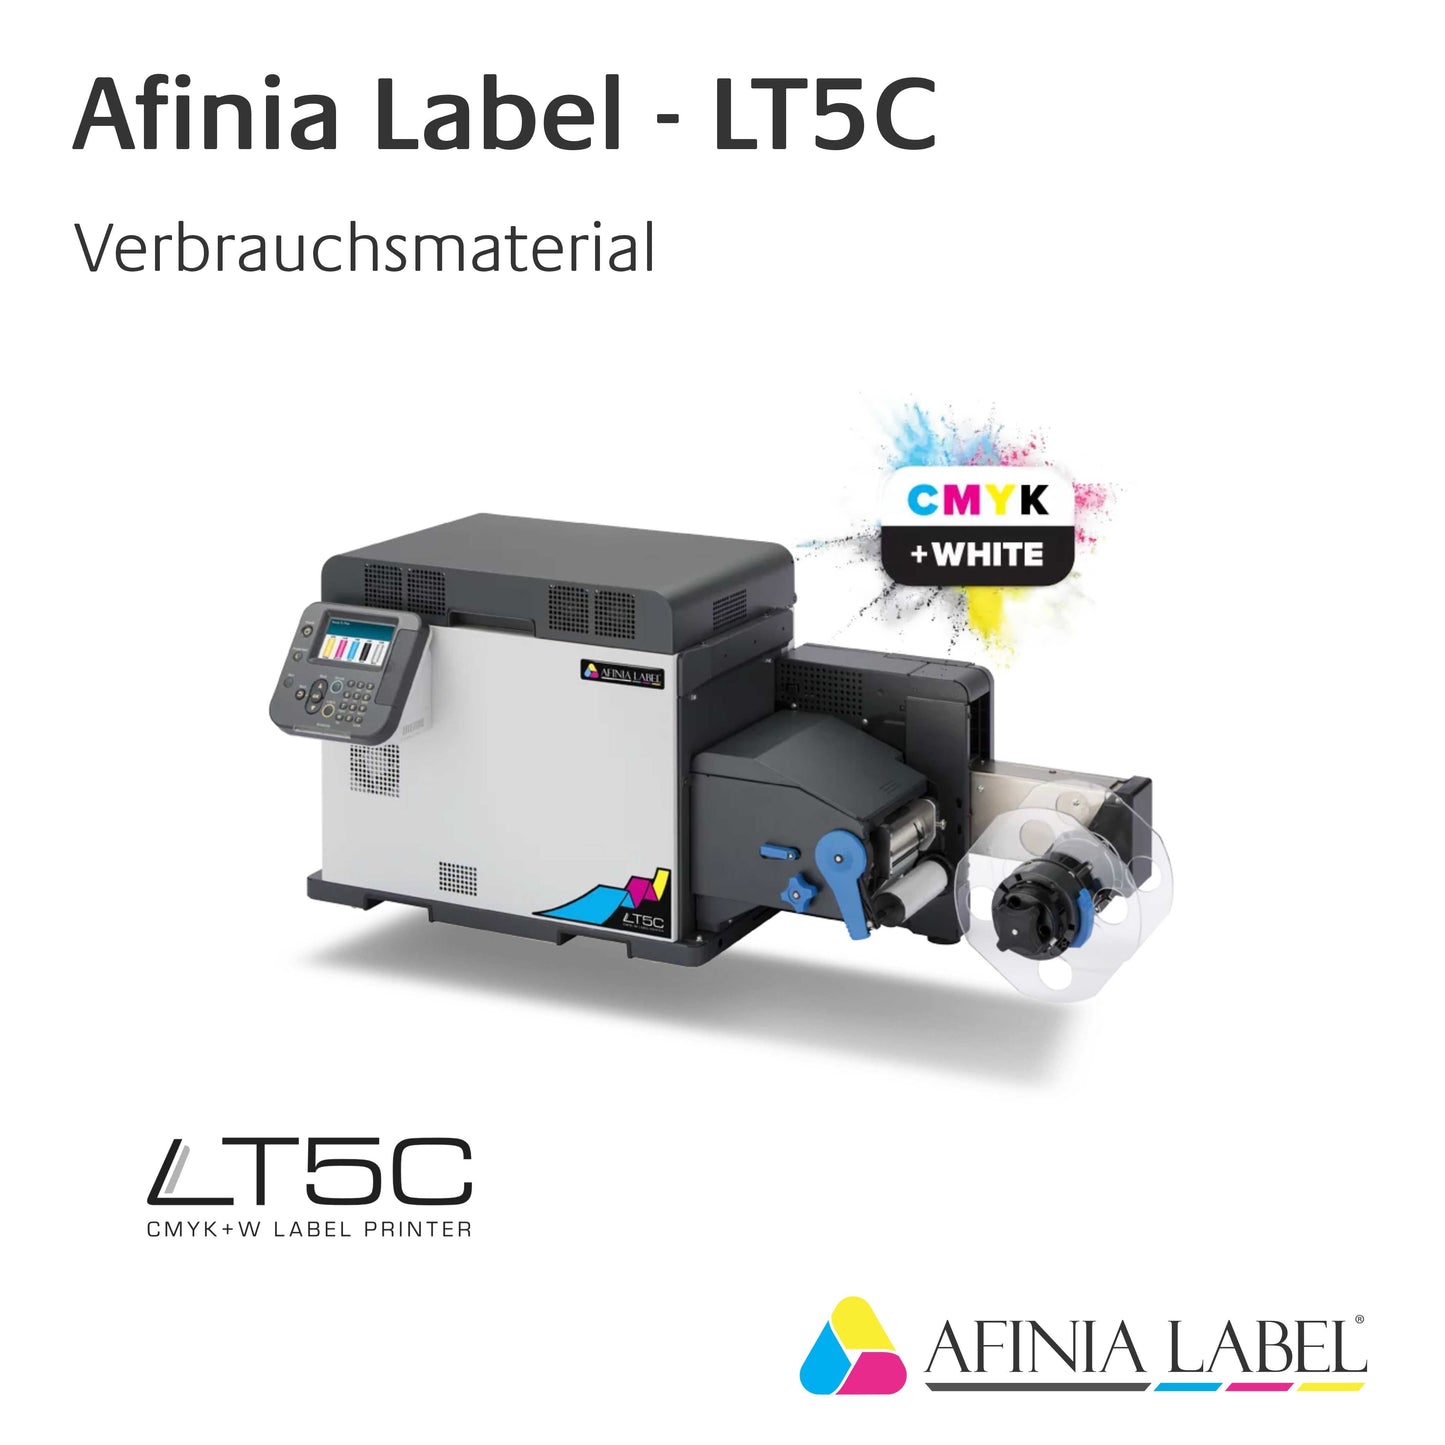 Afinia Label LT5C - Toner / Trommel - Weiß